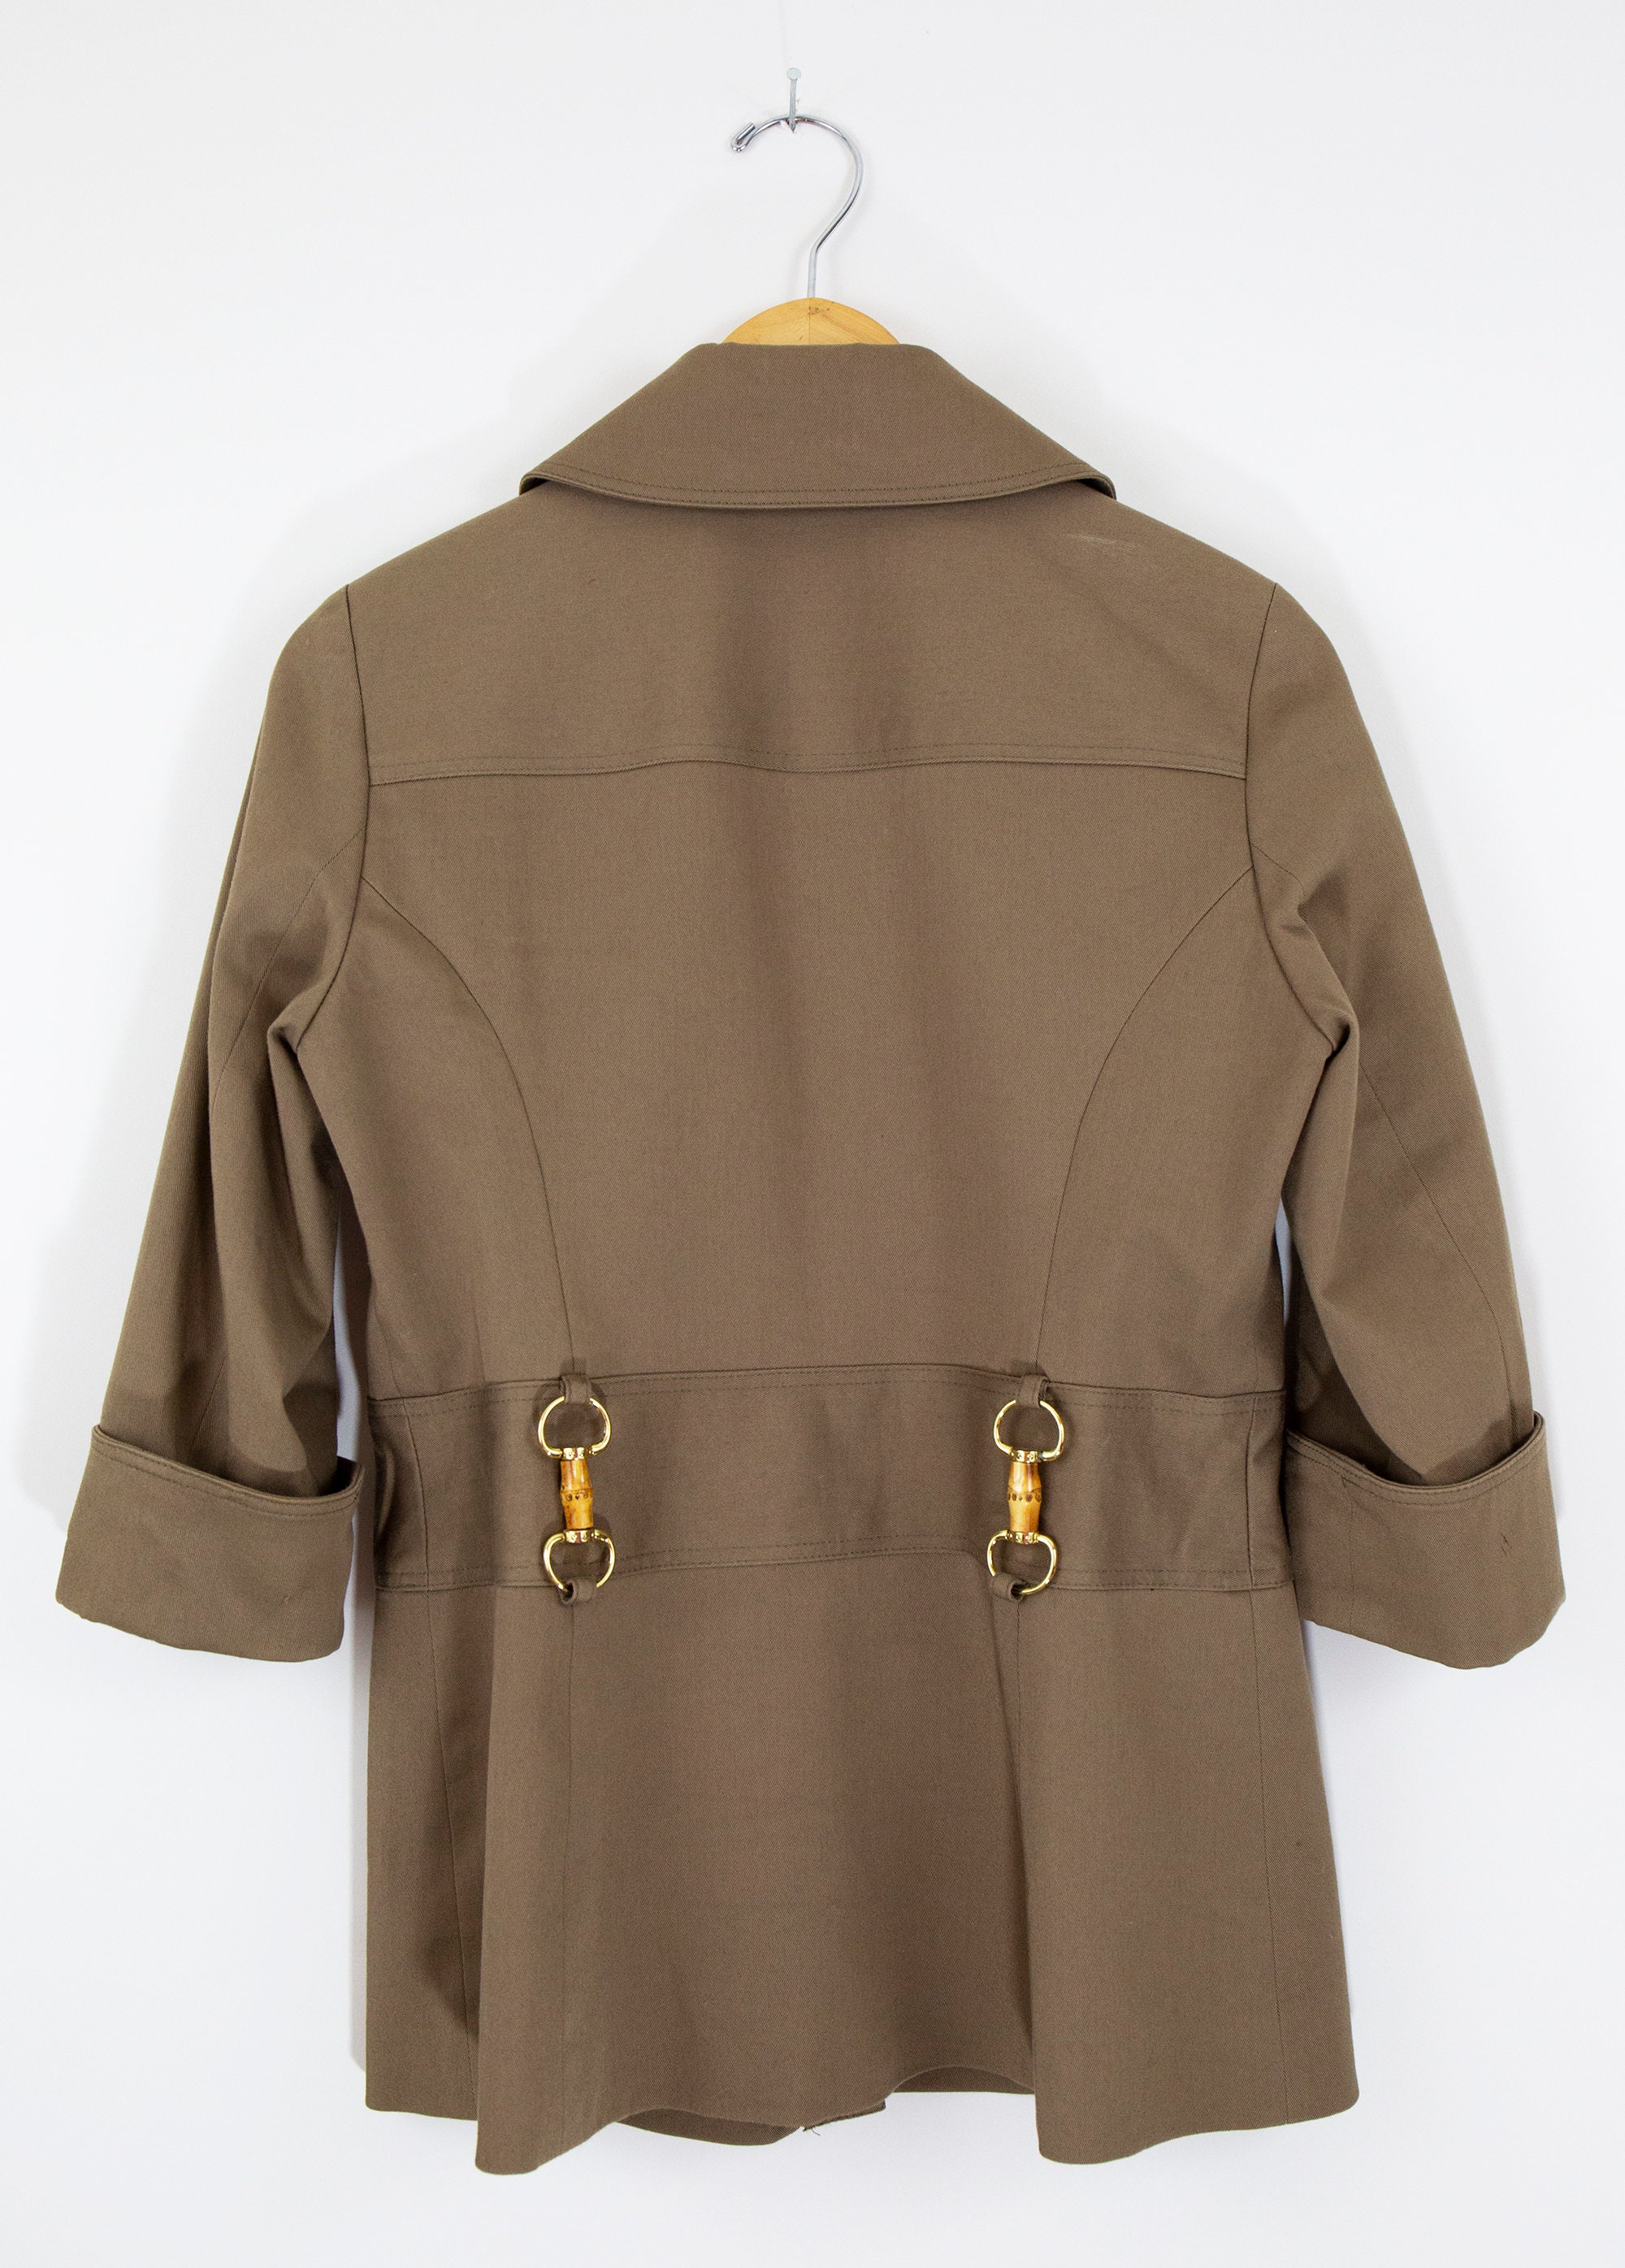 Vintage Khaki Utilitarian Waist Tie Jacket Size 6 or Size - Etsy